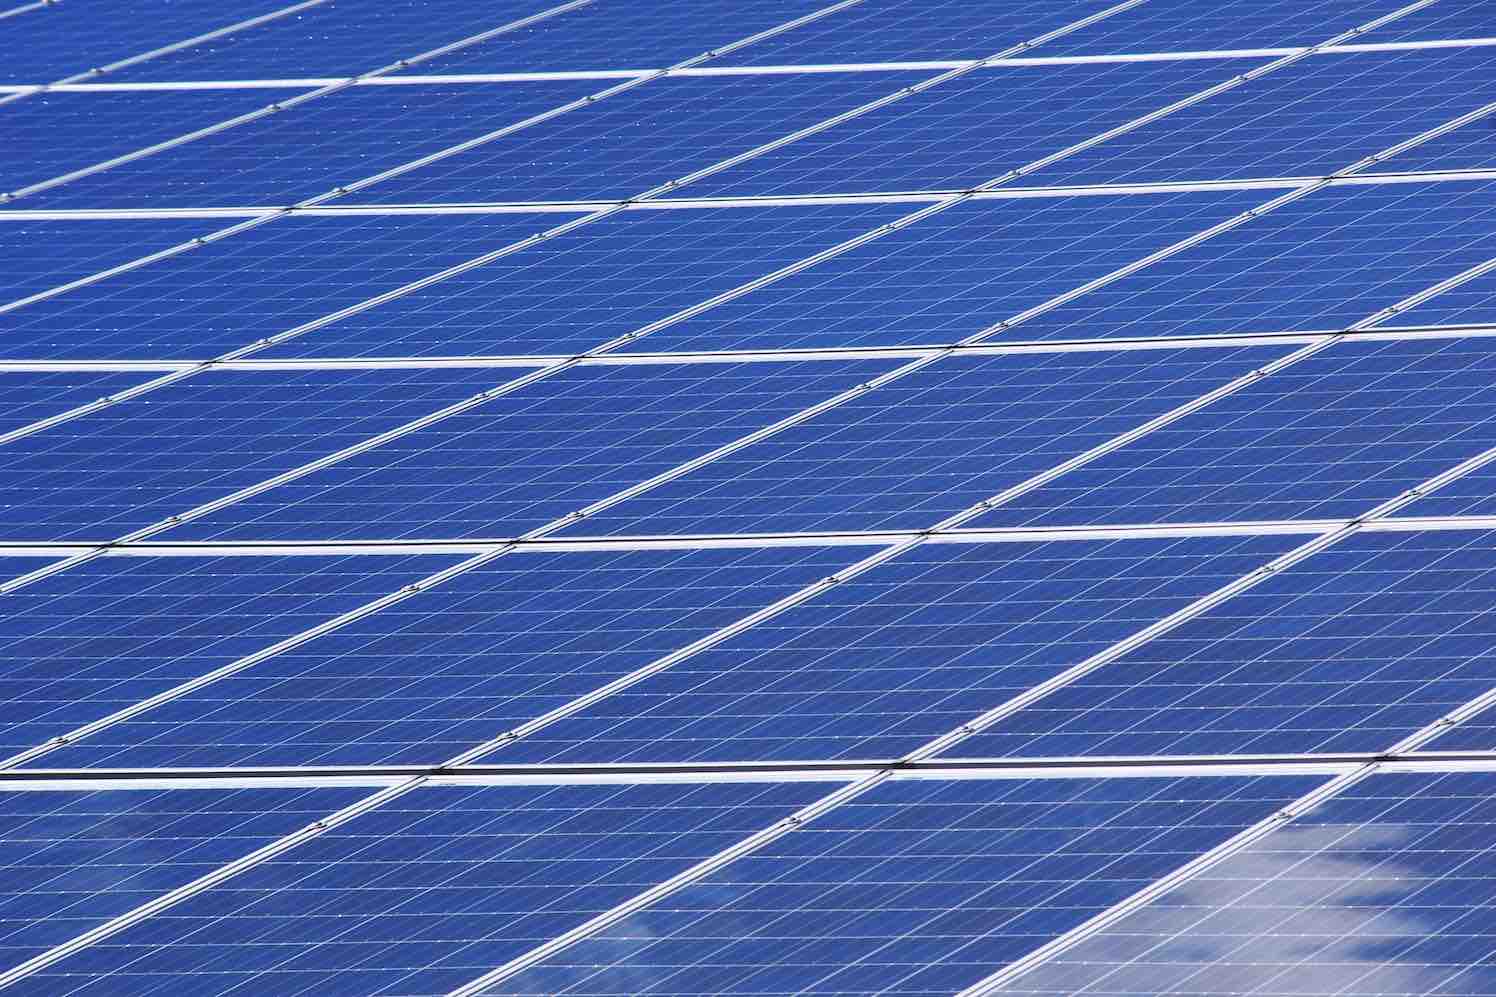 investeren in zonnepanelen en haal het maximum uit je zonnepanelen voor een duurzamere toekomst